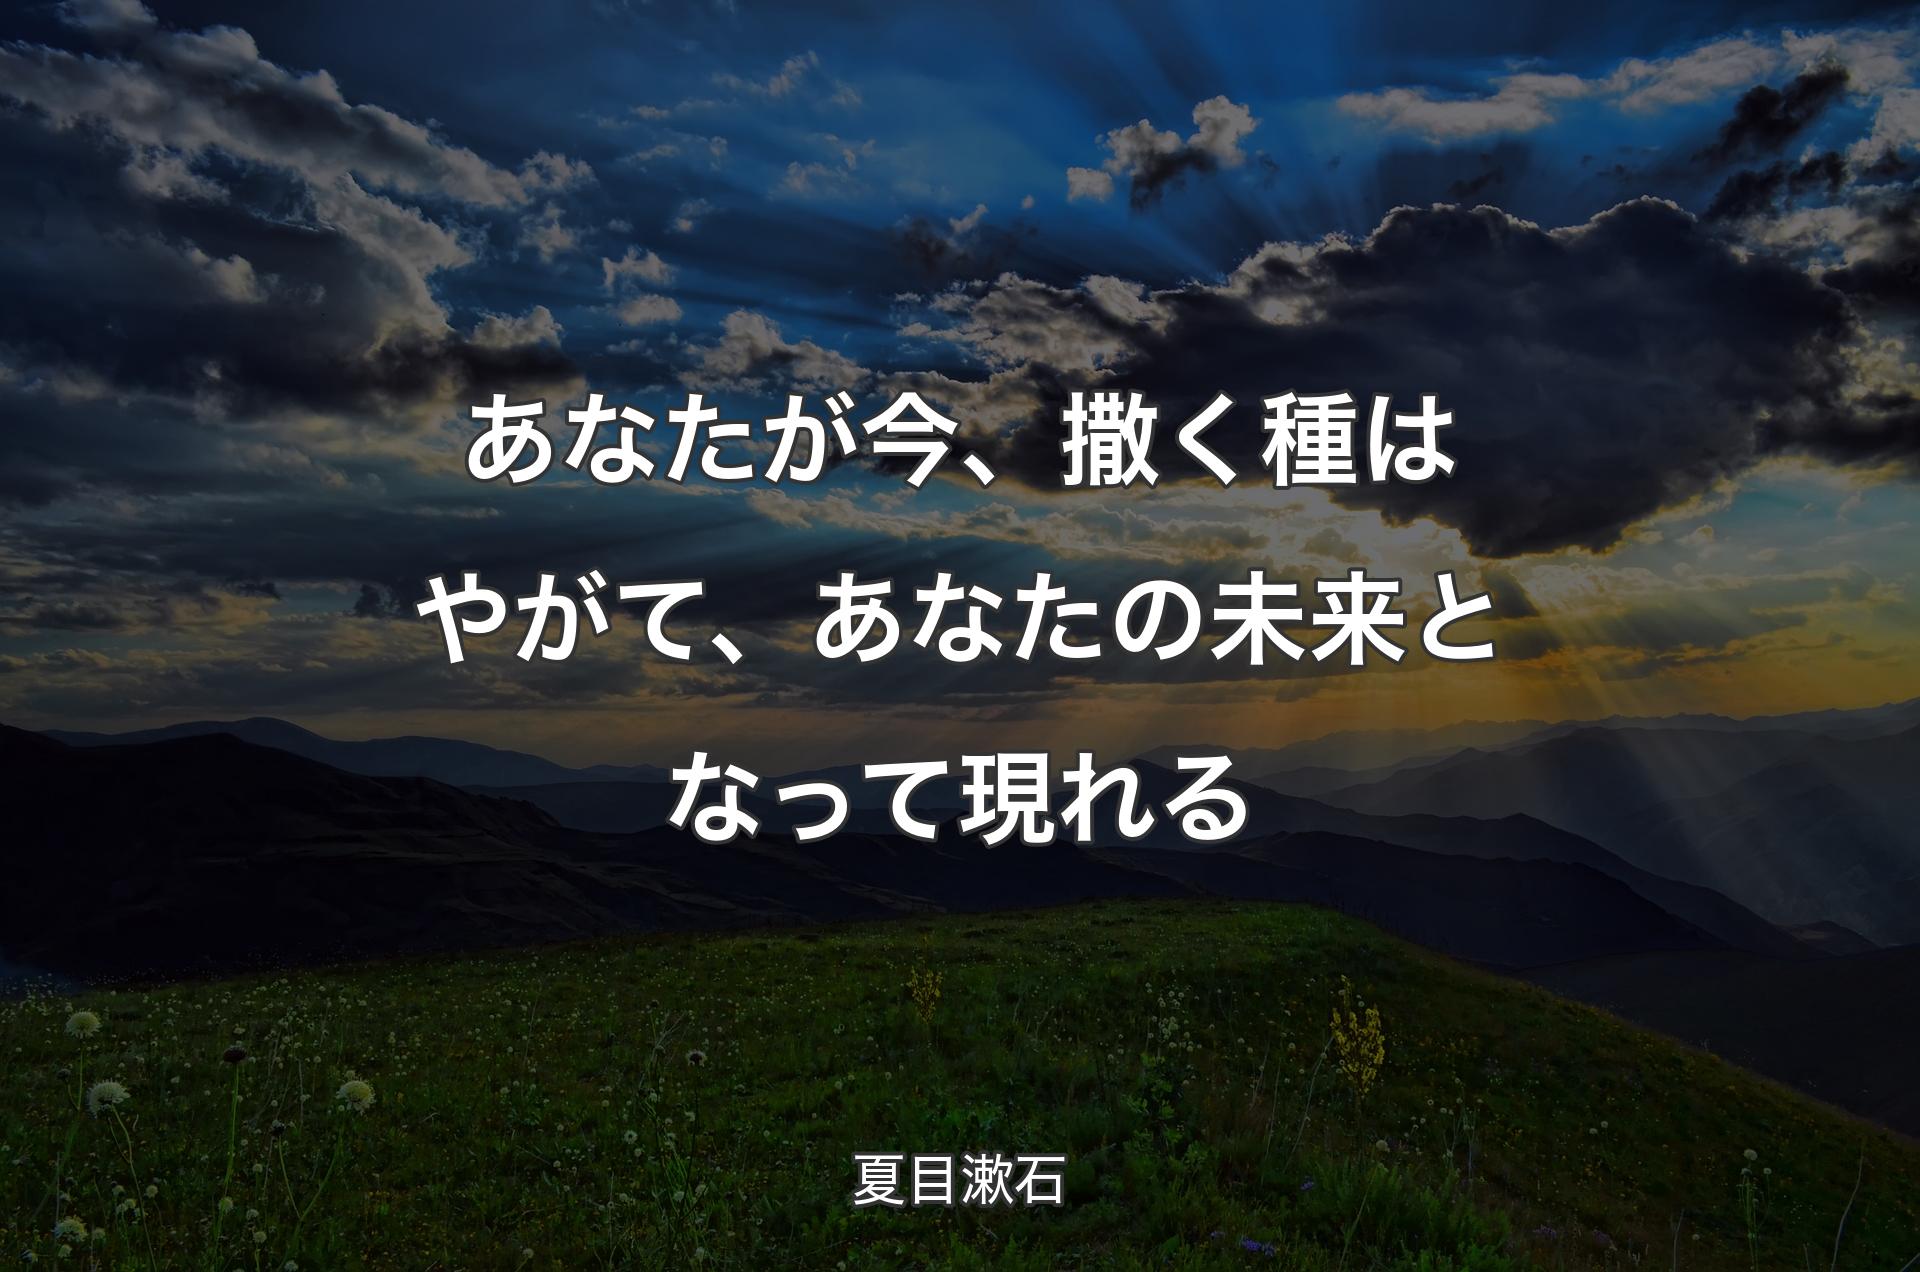 あなたが今、撒く種はやがて、あなたの未来となって現れる - 夏目漱石